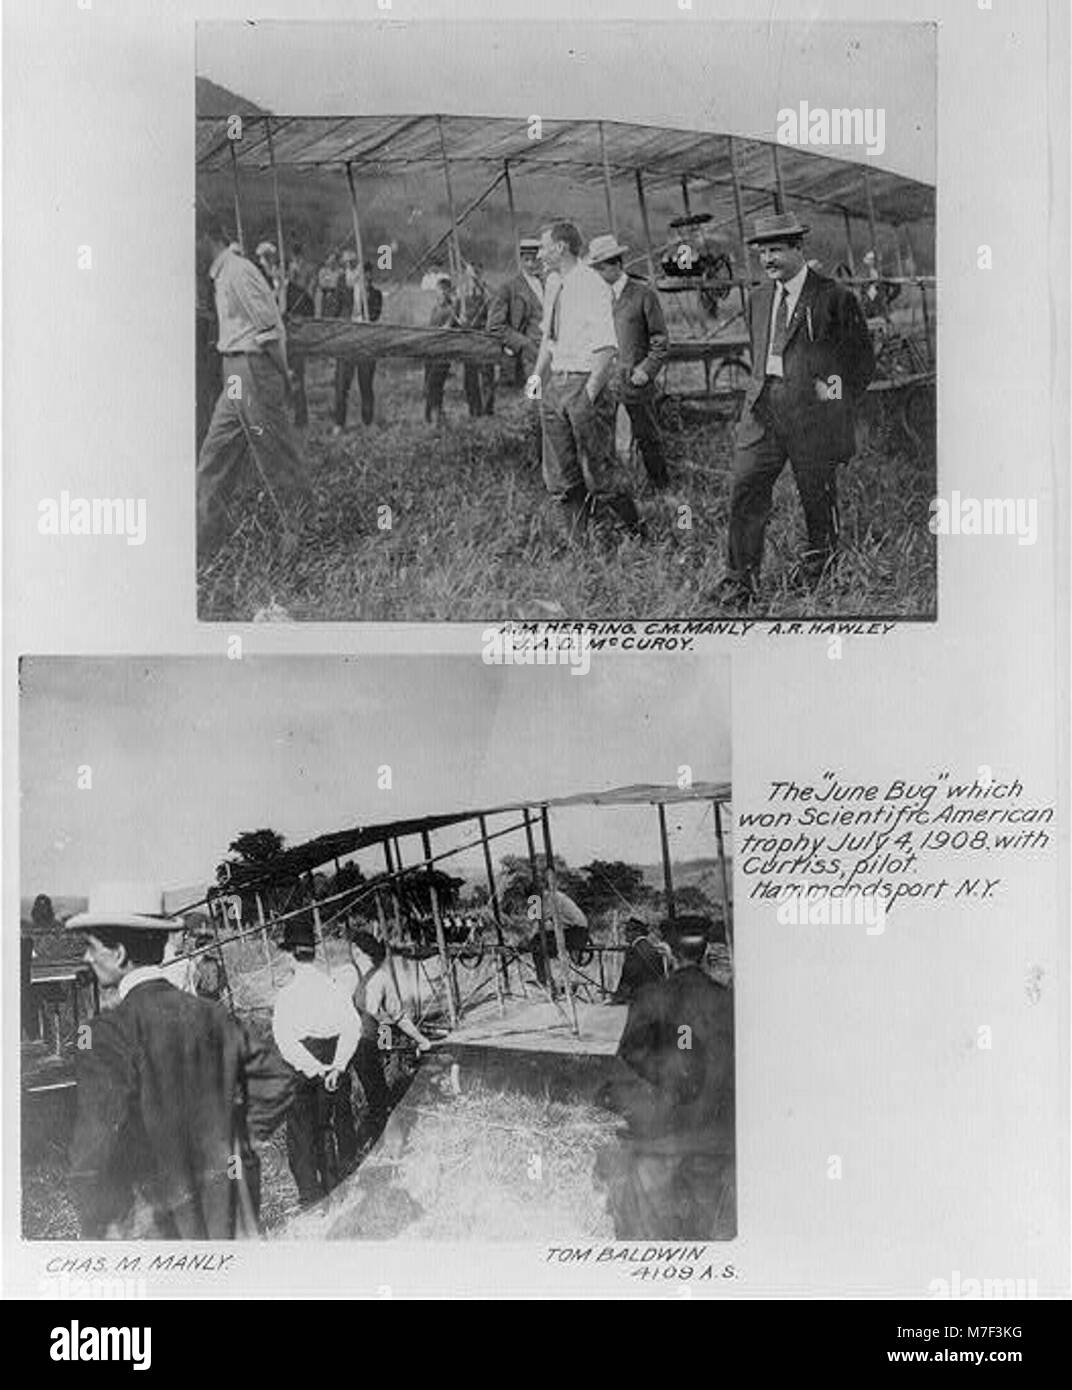 Il giugno bug che ha vinto Scientific American trophy, 4 luglio 1908, con Curtiss, pilota. Hammondsport, N.Y LCCN2001705767 Foto Stock